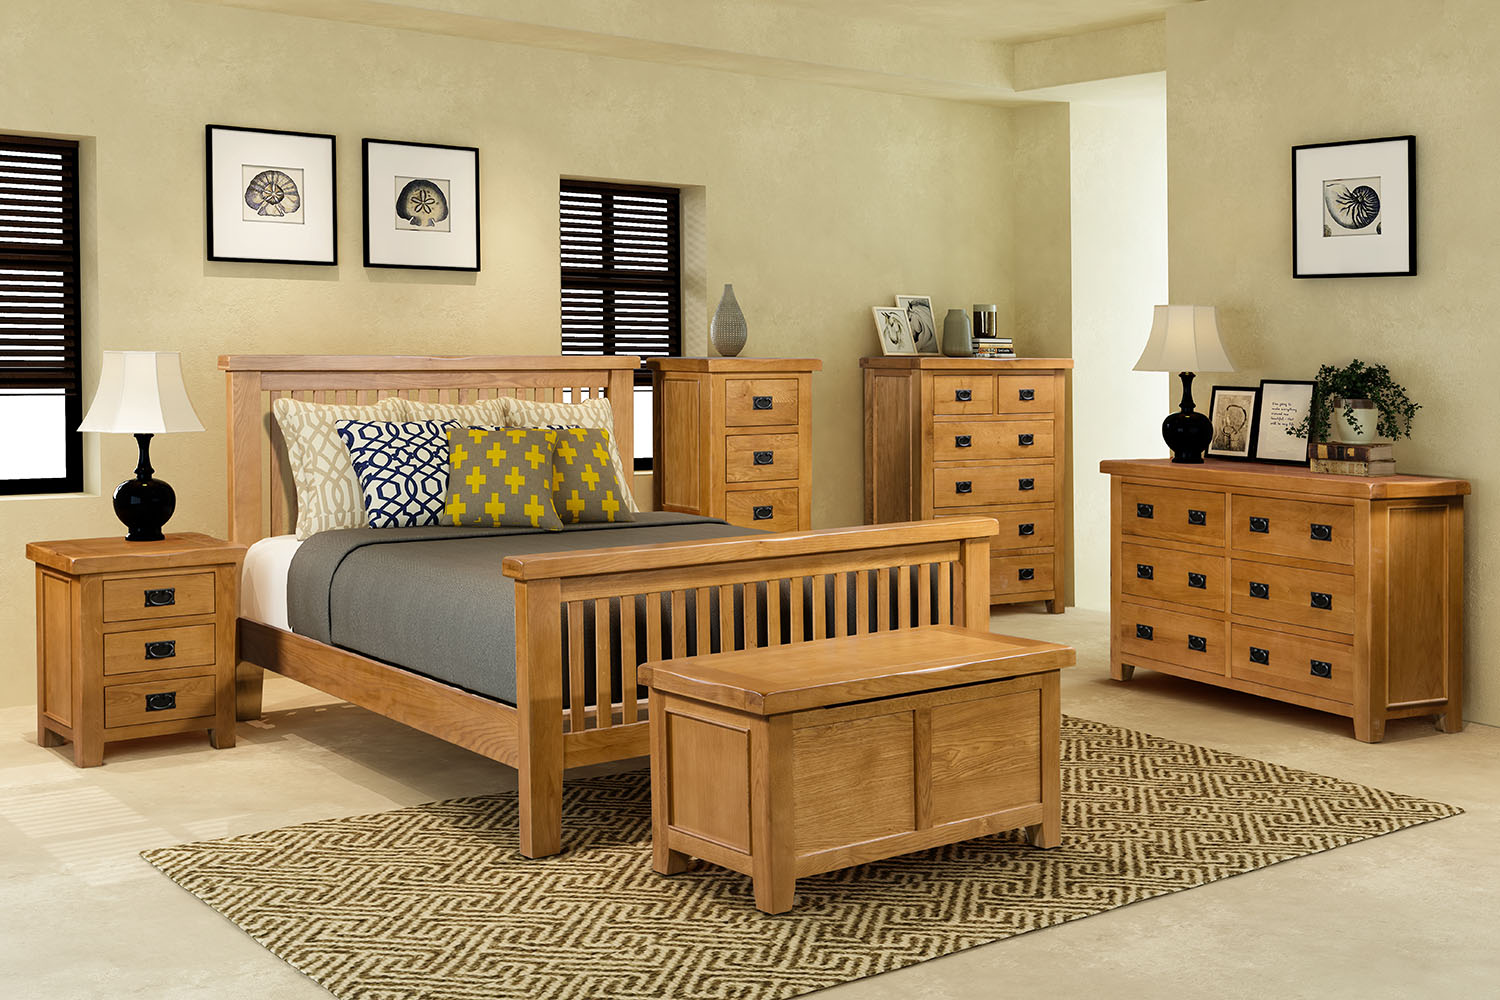 oak bedroom furniture ranges